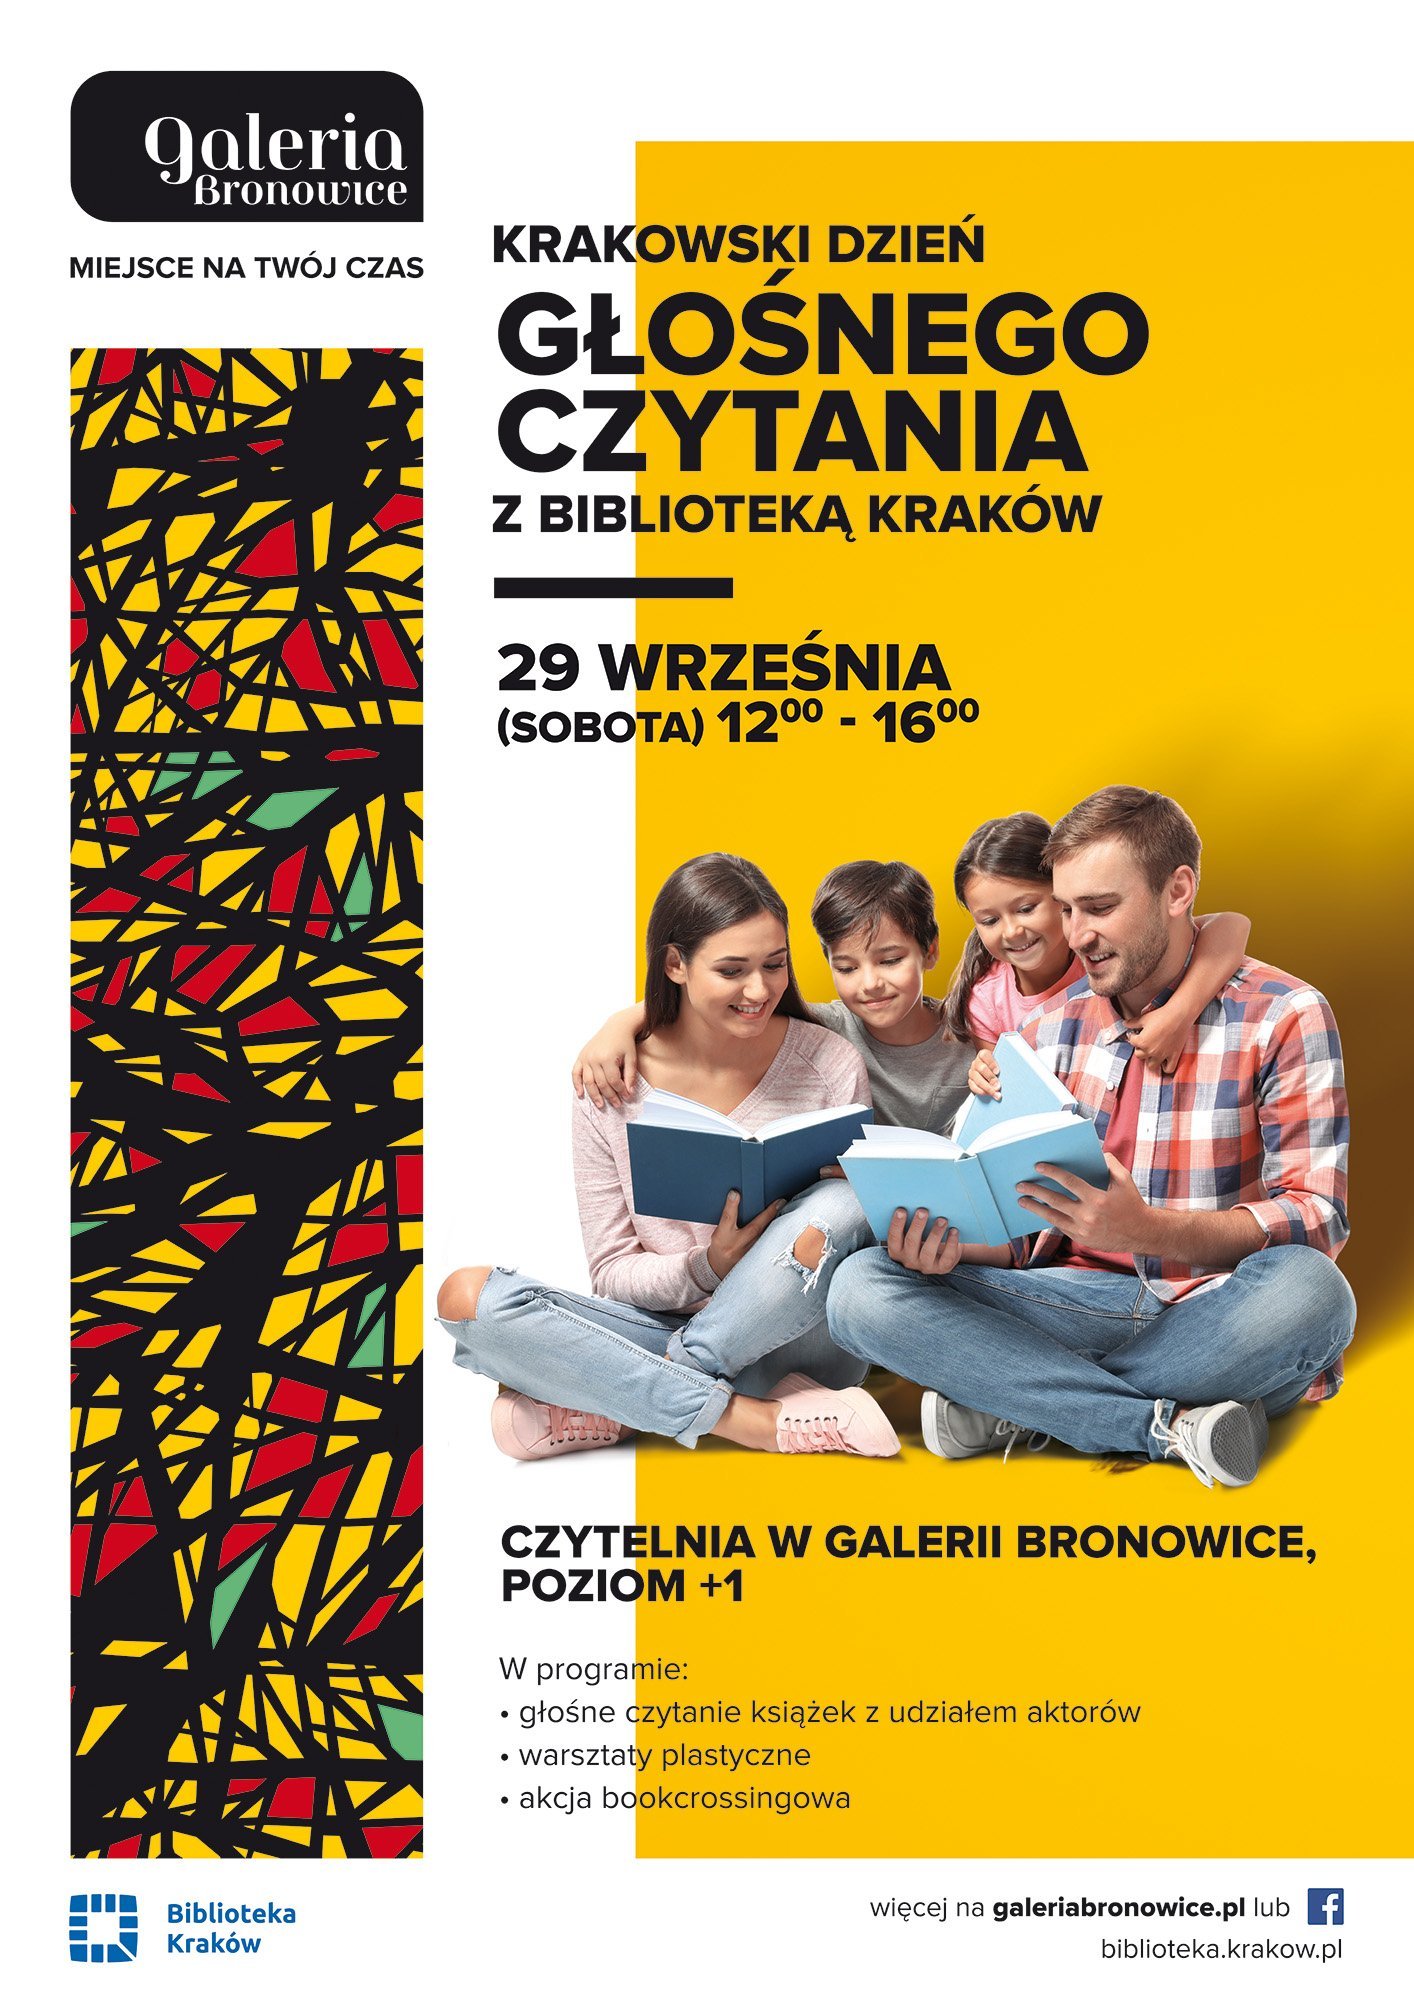 Krakowski Dzień Głośnego Czytania w Galerii Bronowice